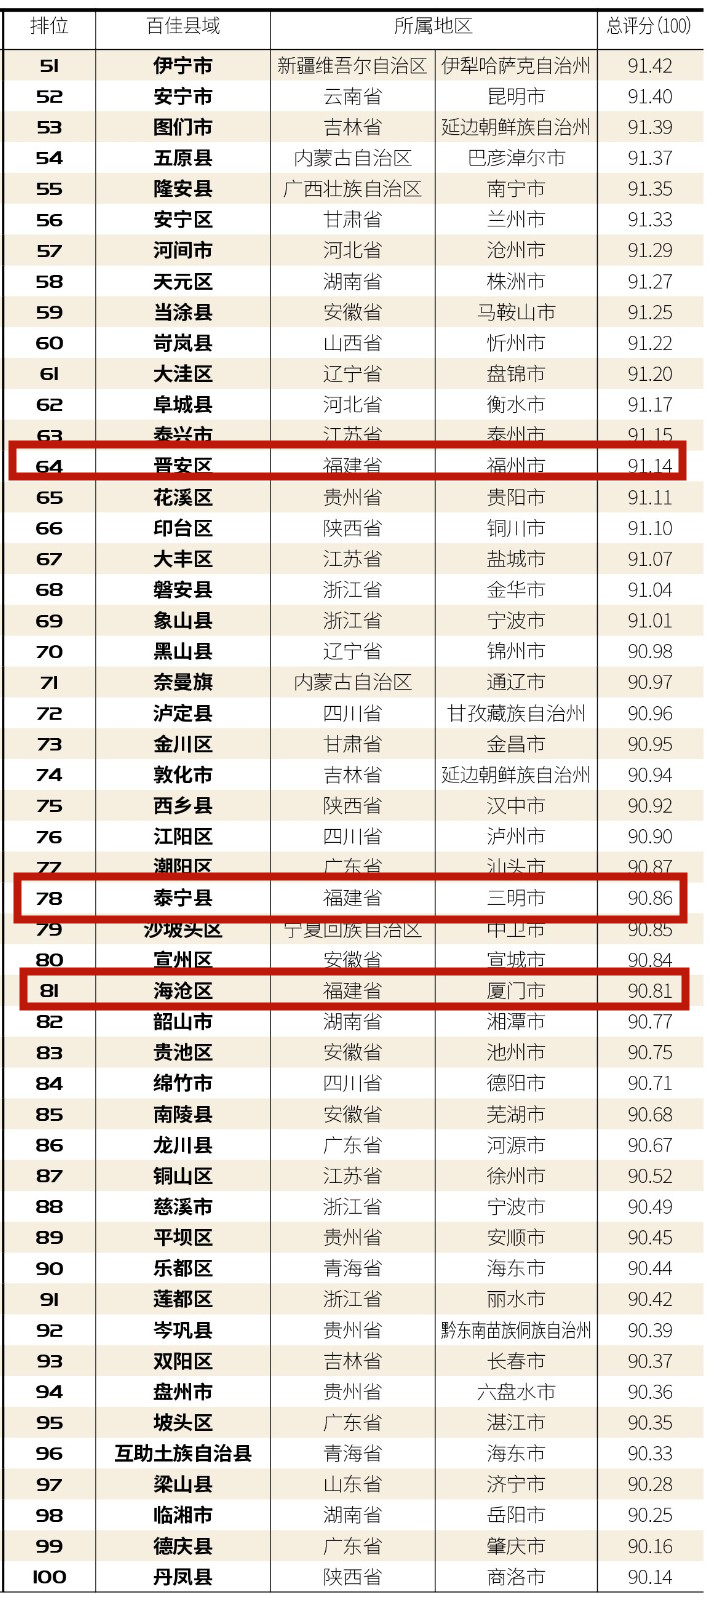 福建4地上榜“中国最美乡村百佳县市”榜单